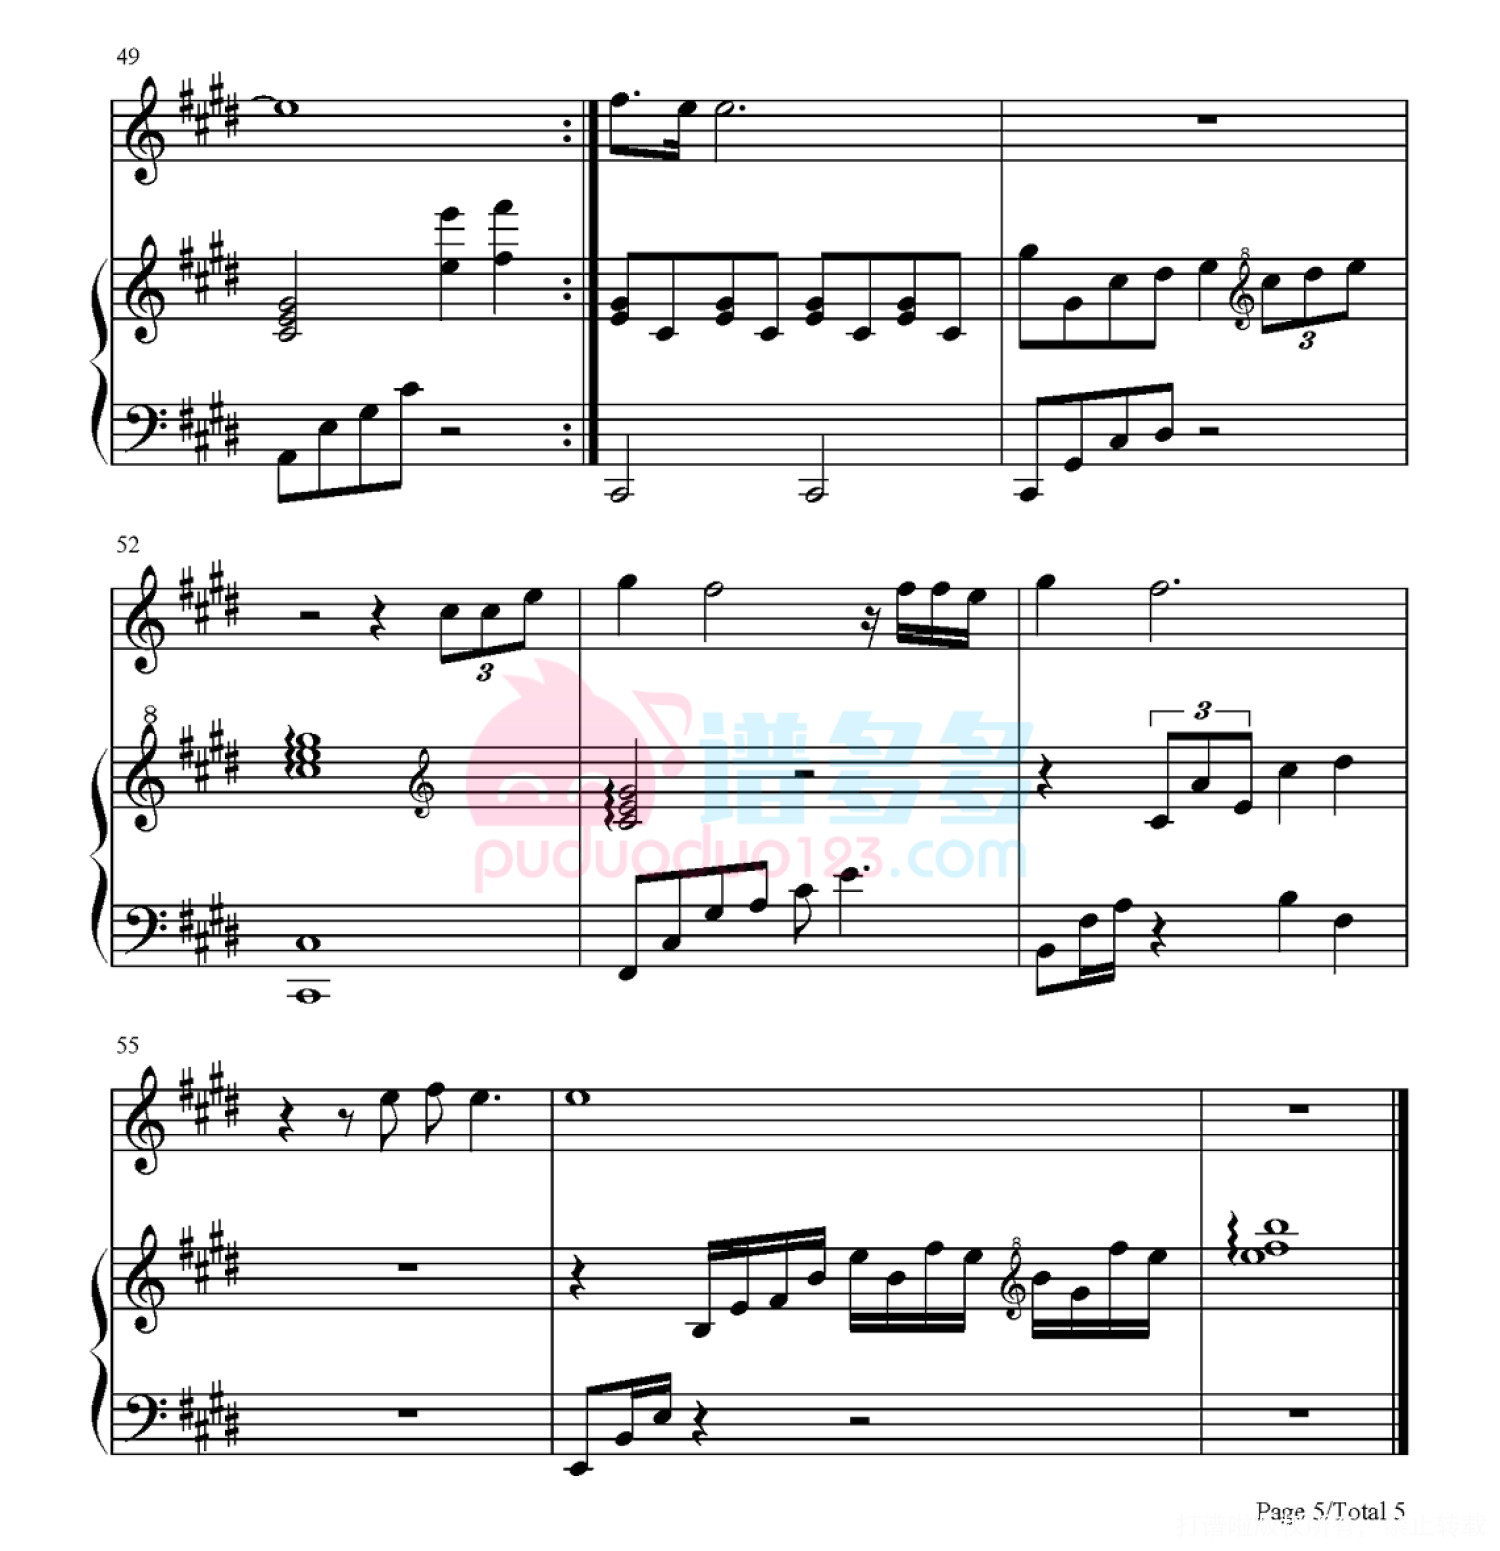 给所有知道我名字的人-弹唱版五线谱预览2-钢琴谱文件（五线谱、双手简谱、数字谱、Midi、PDF）免费下载